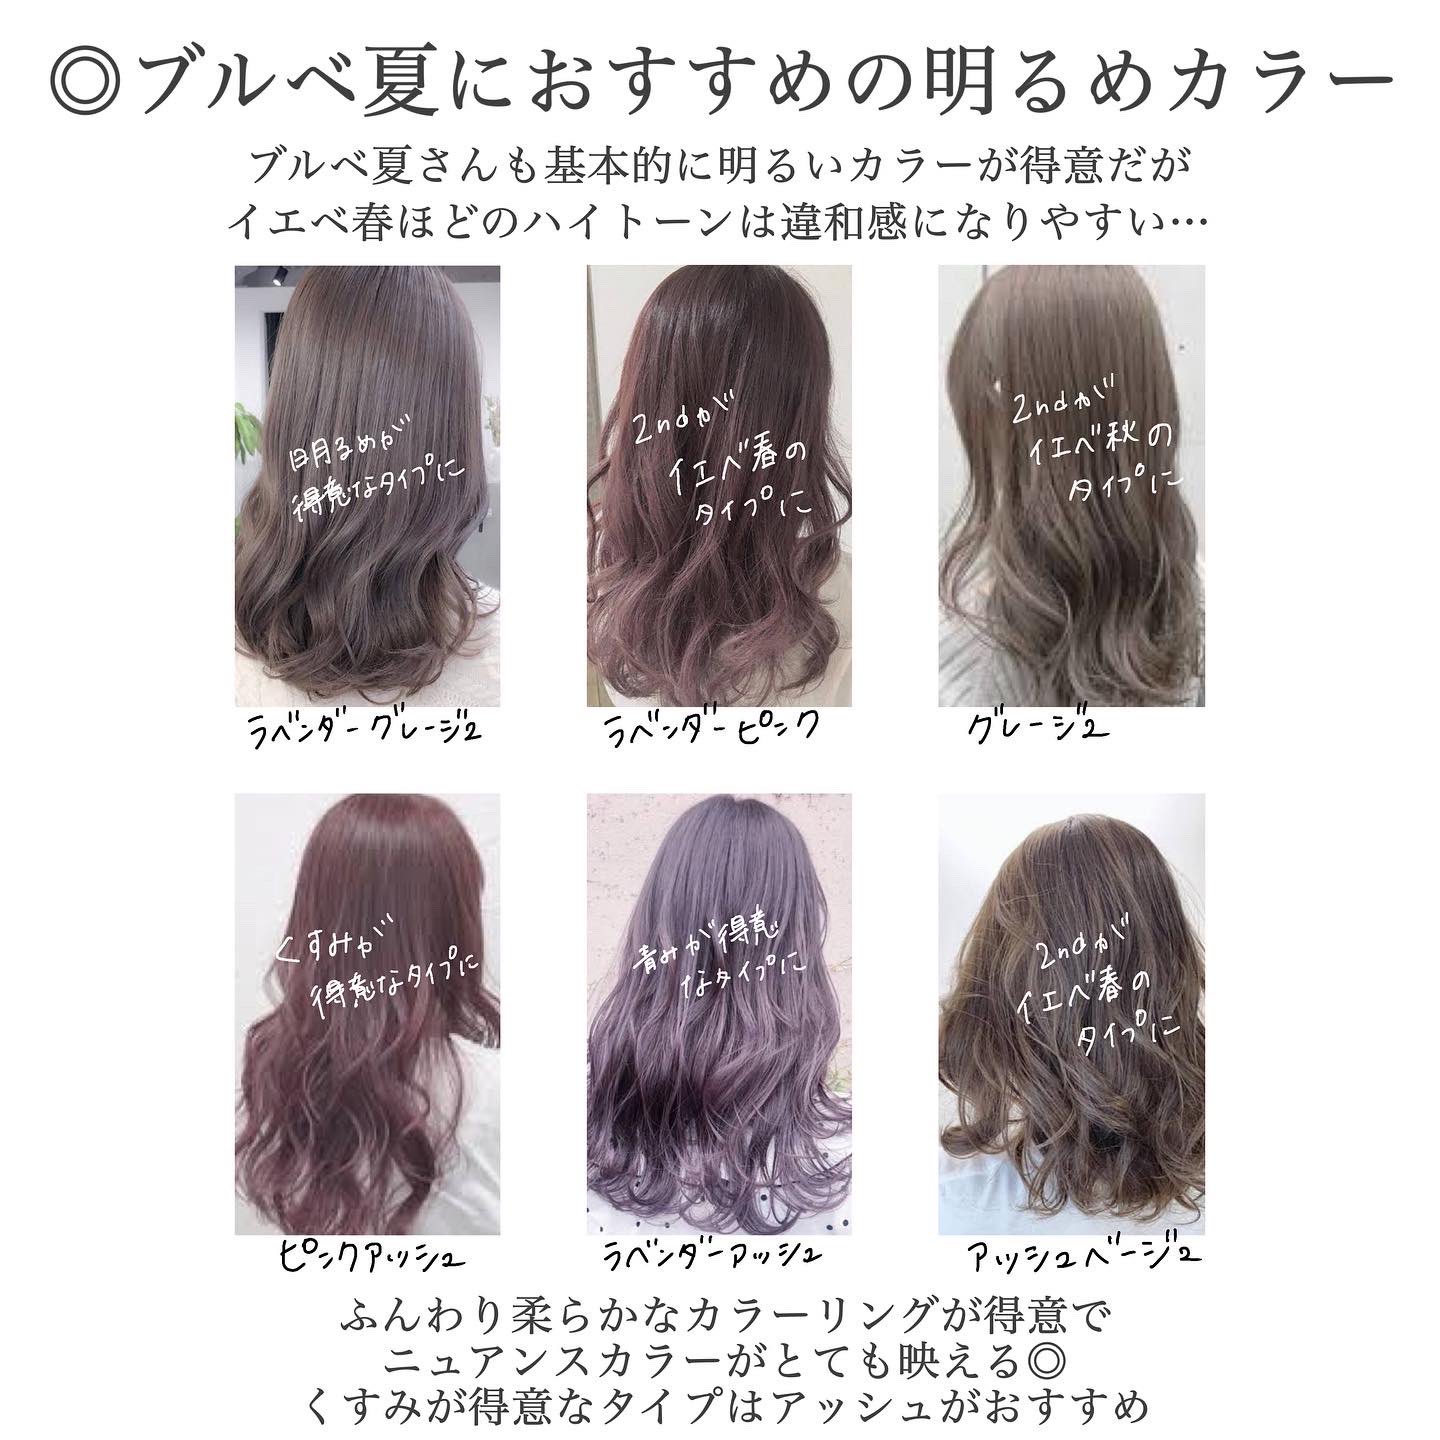 Haru イメージコンサルタント 横浜駅 ブルベ夏におすすめのヘアカラー 髪 色はもろに顔色に影響の出やすい場所なのでパーソナルカラーにあった色の方が顔色が良く見えたり 垢抜けてみえます ブルベ夏さんは特にくすみ感のあるアッシュなど柔らかな